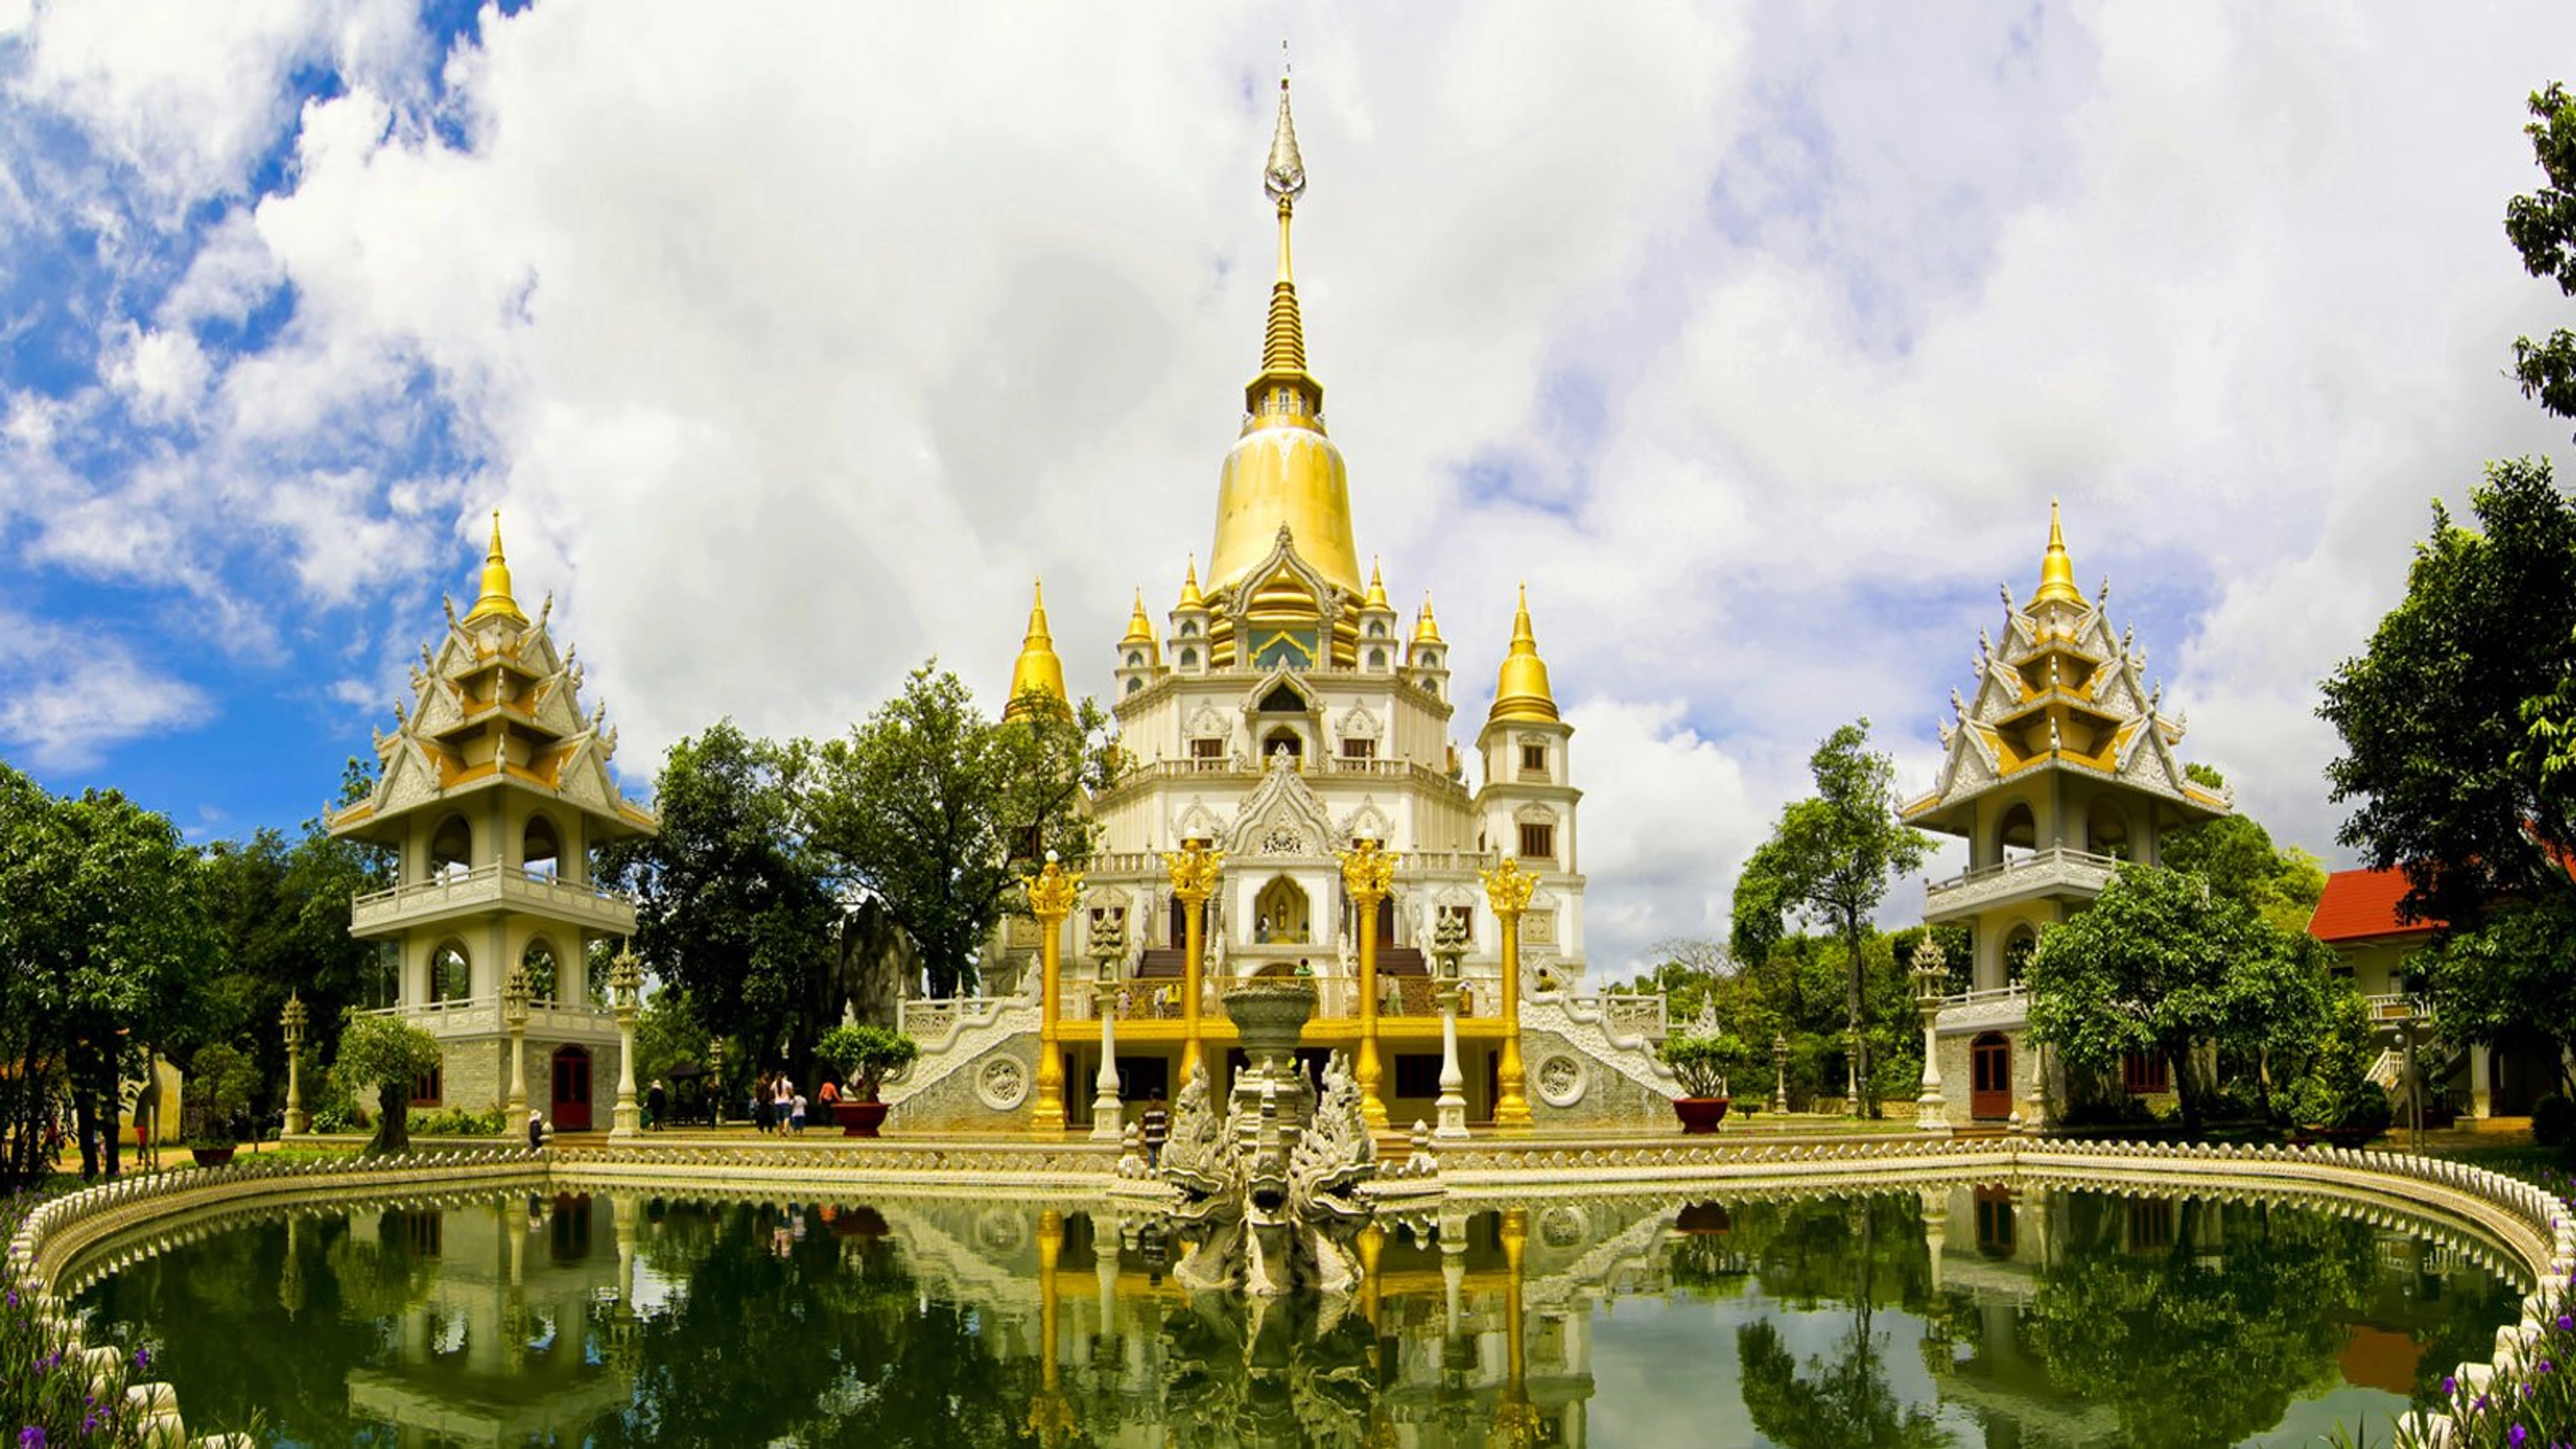 Chùa Bửu Long - "Ngôi chùa Thái Lan" giữa lòng Sài Gòn